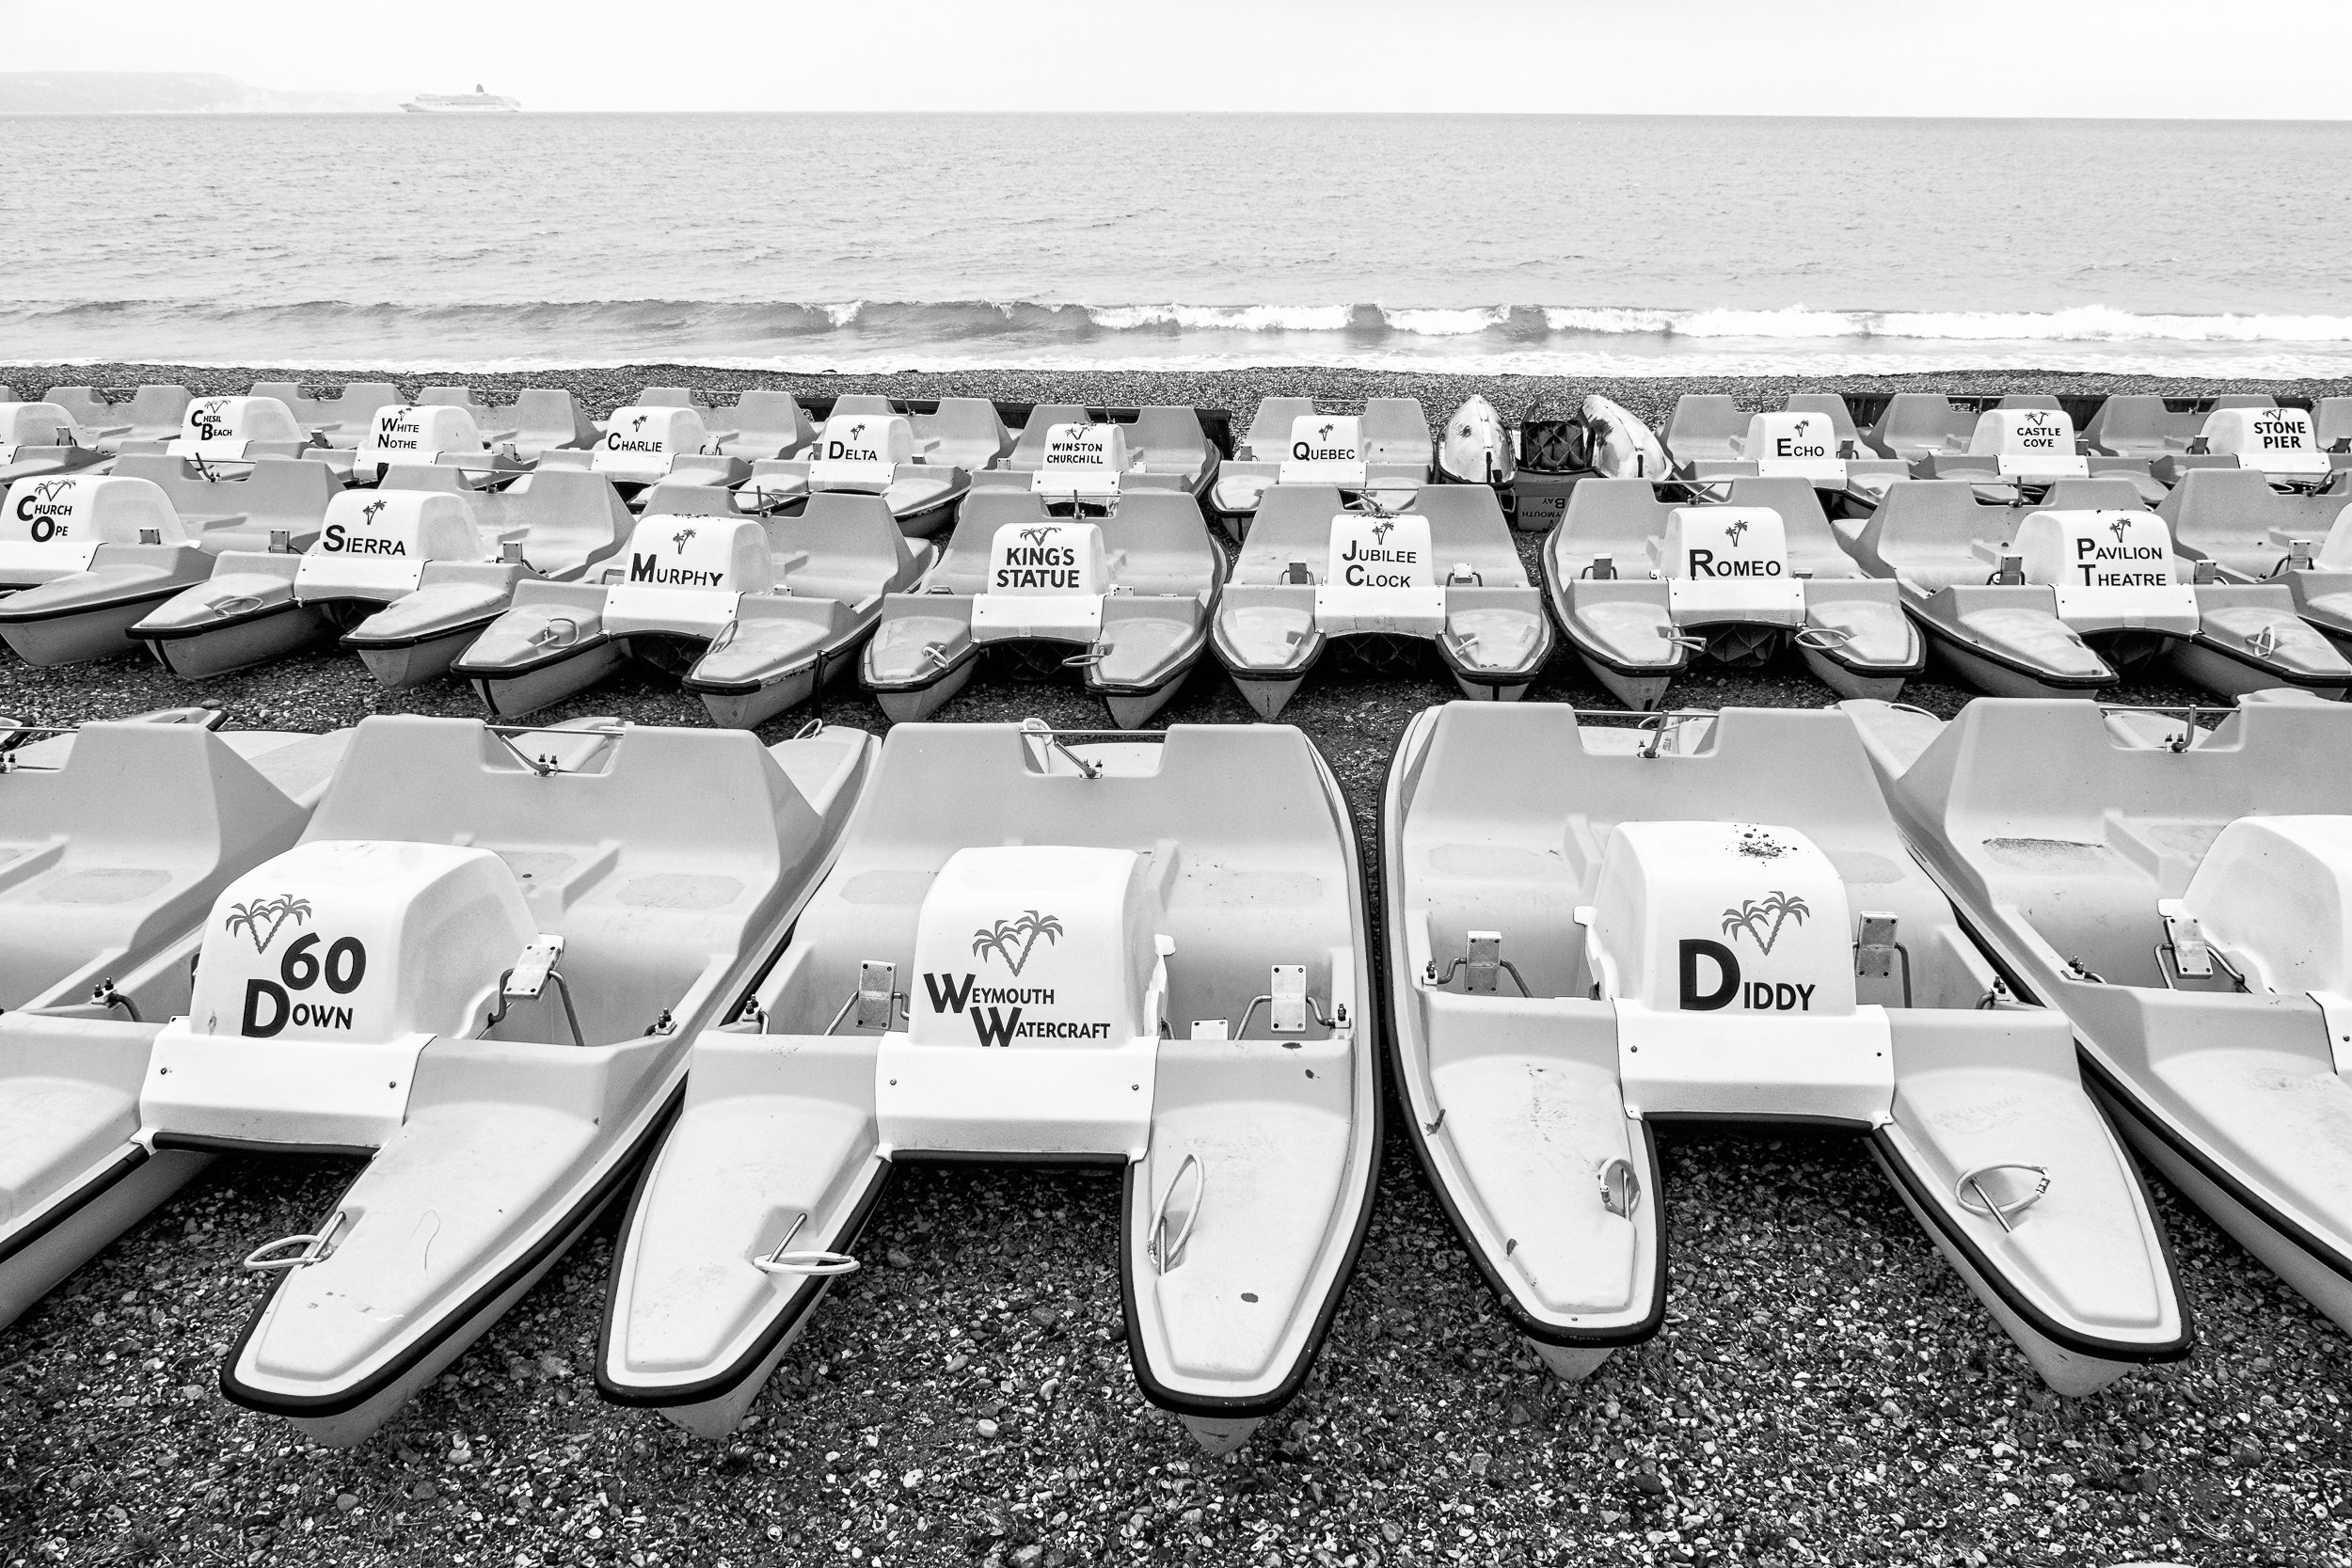 Weymouth Watercraft